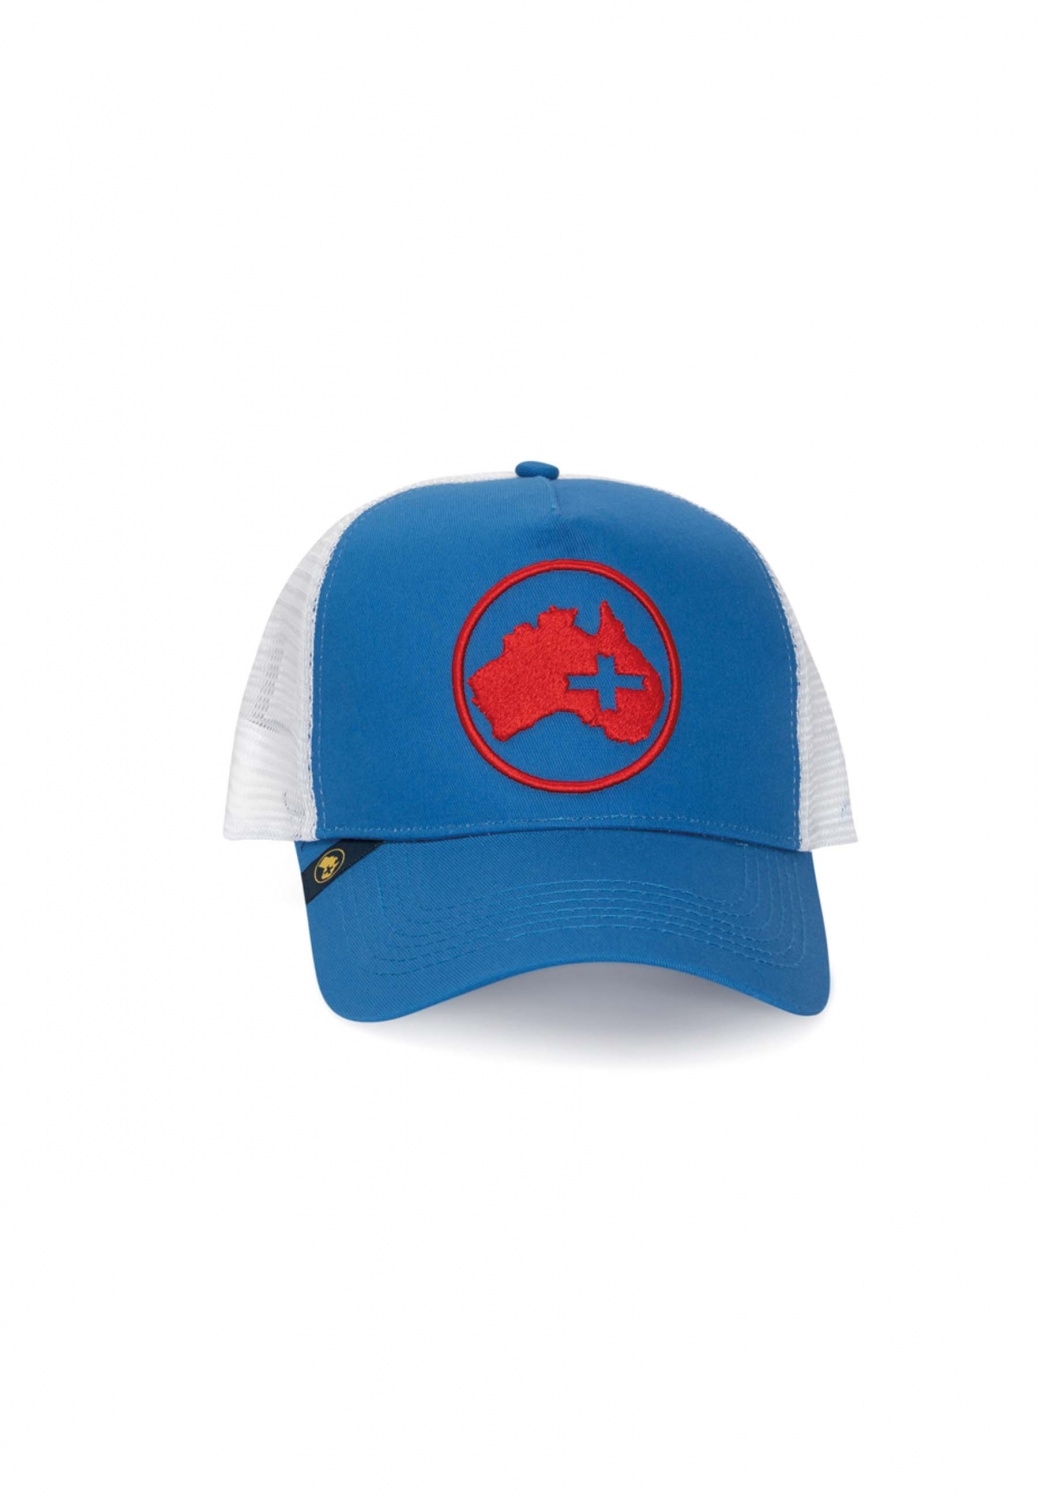 BLUE AND RED CAP Altonadock